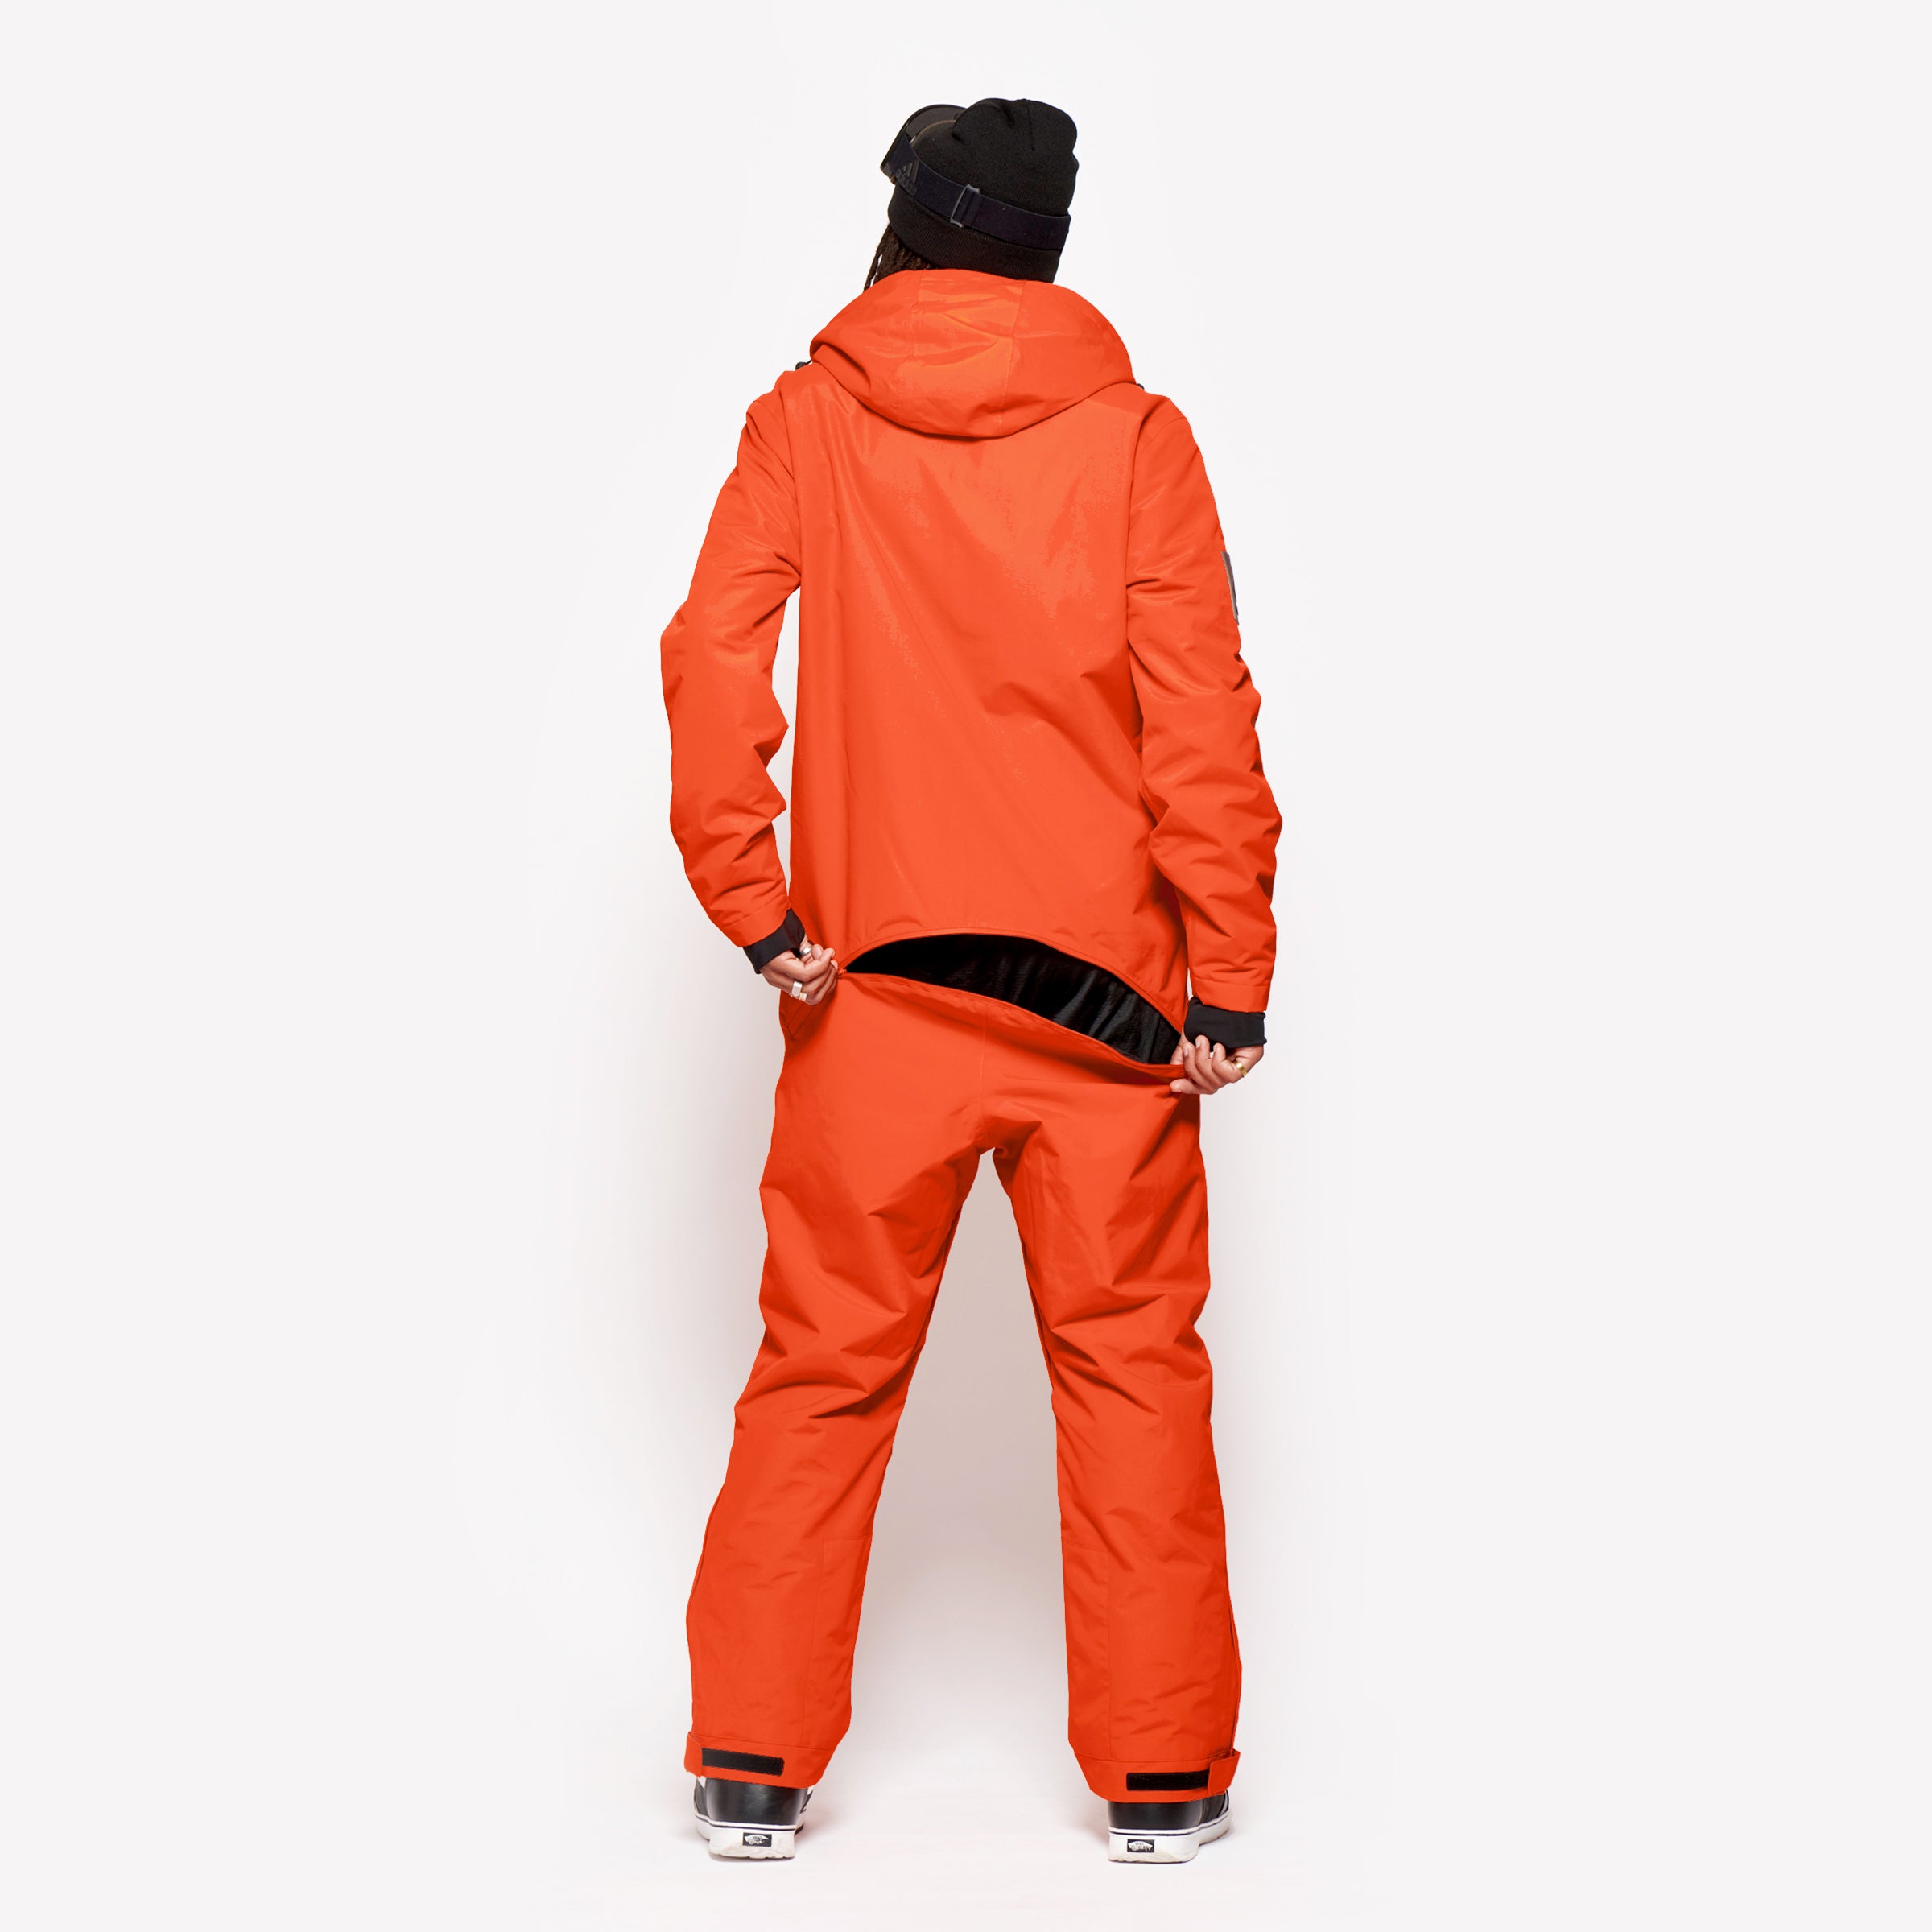 Men's Snow Suit, Orange